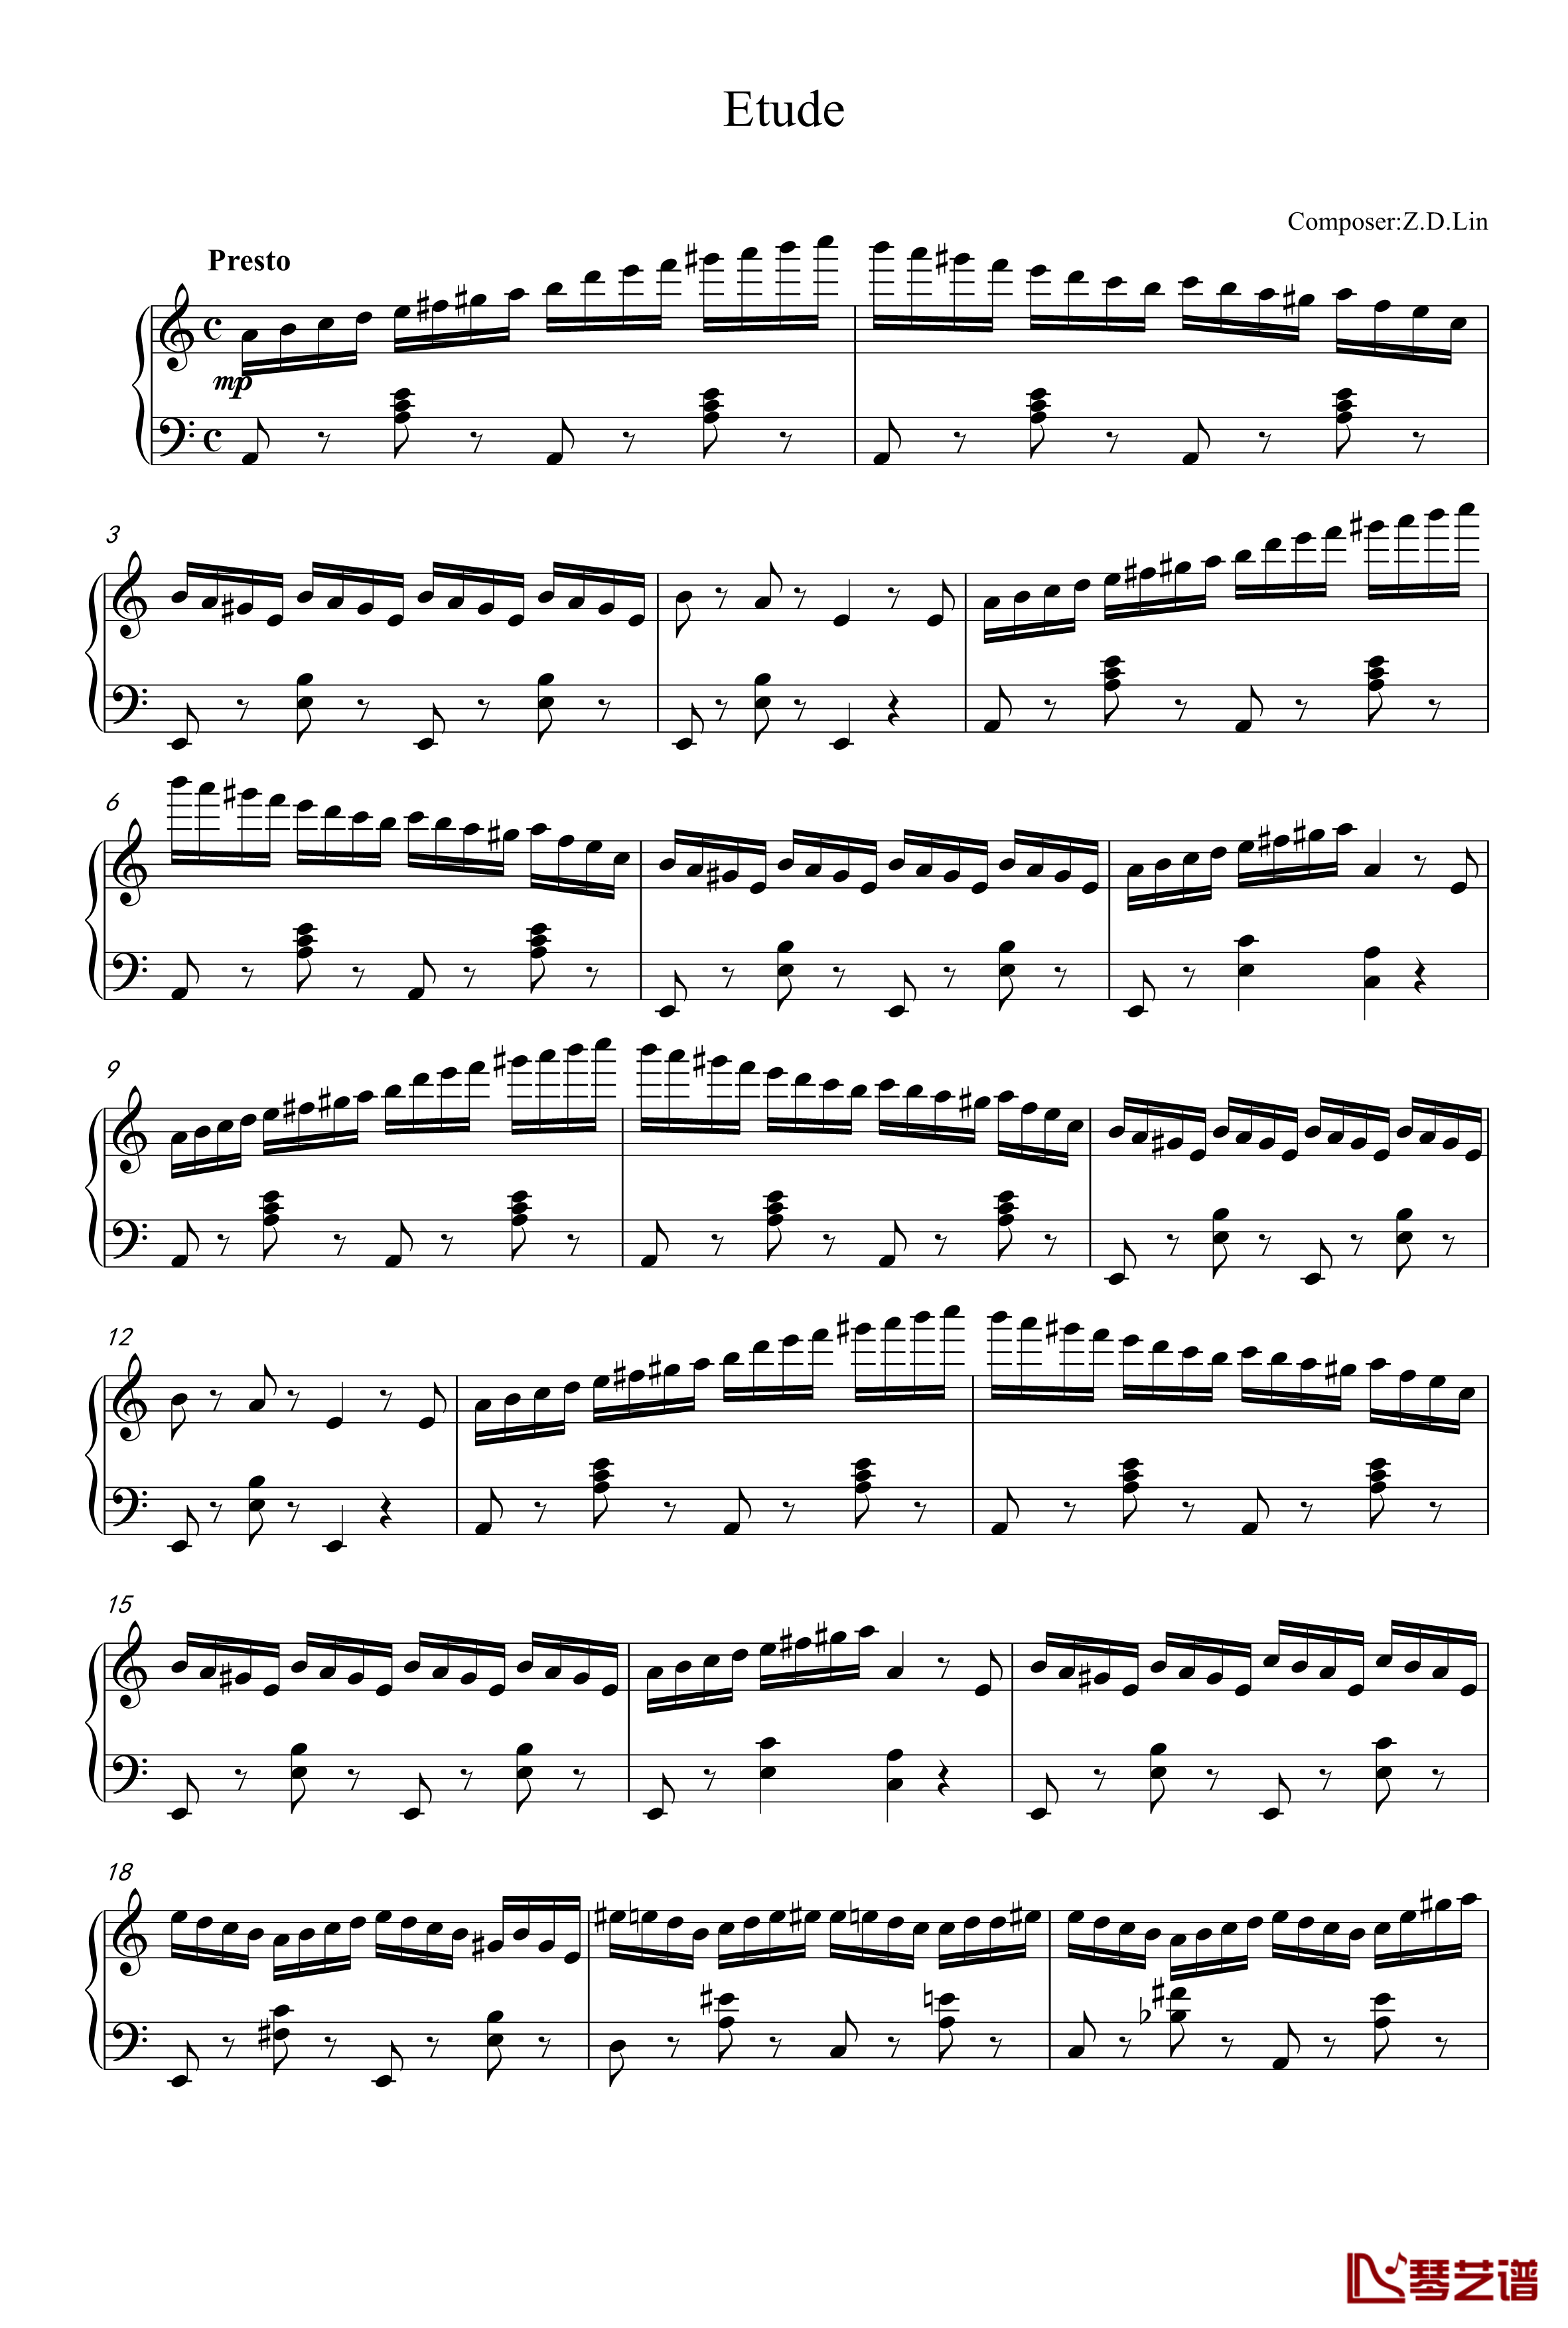 练习曲钢琴谱-zd201